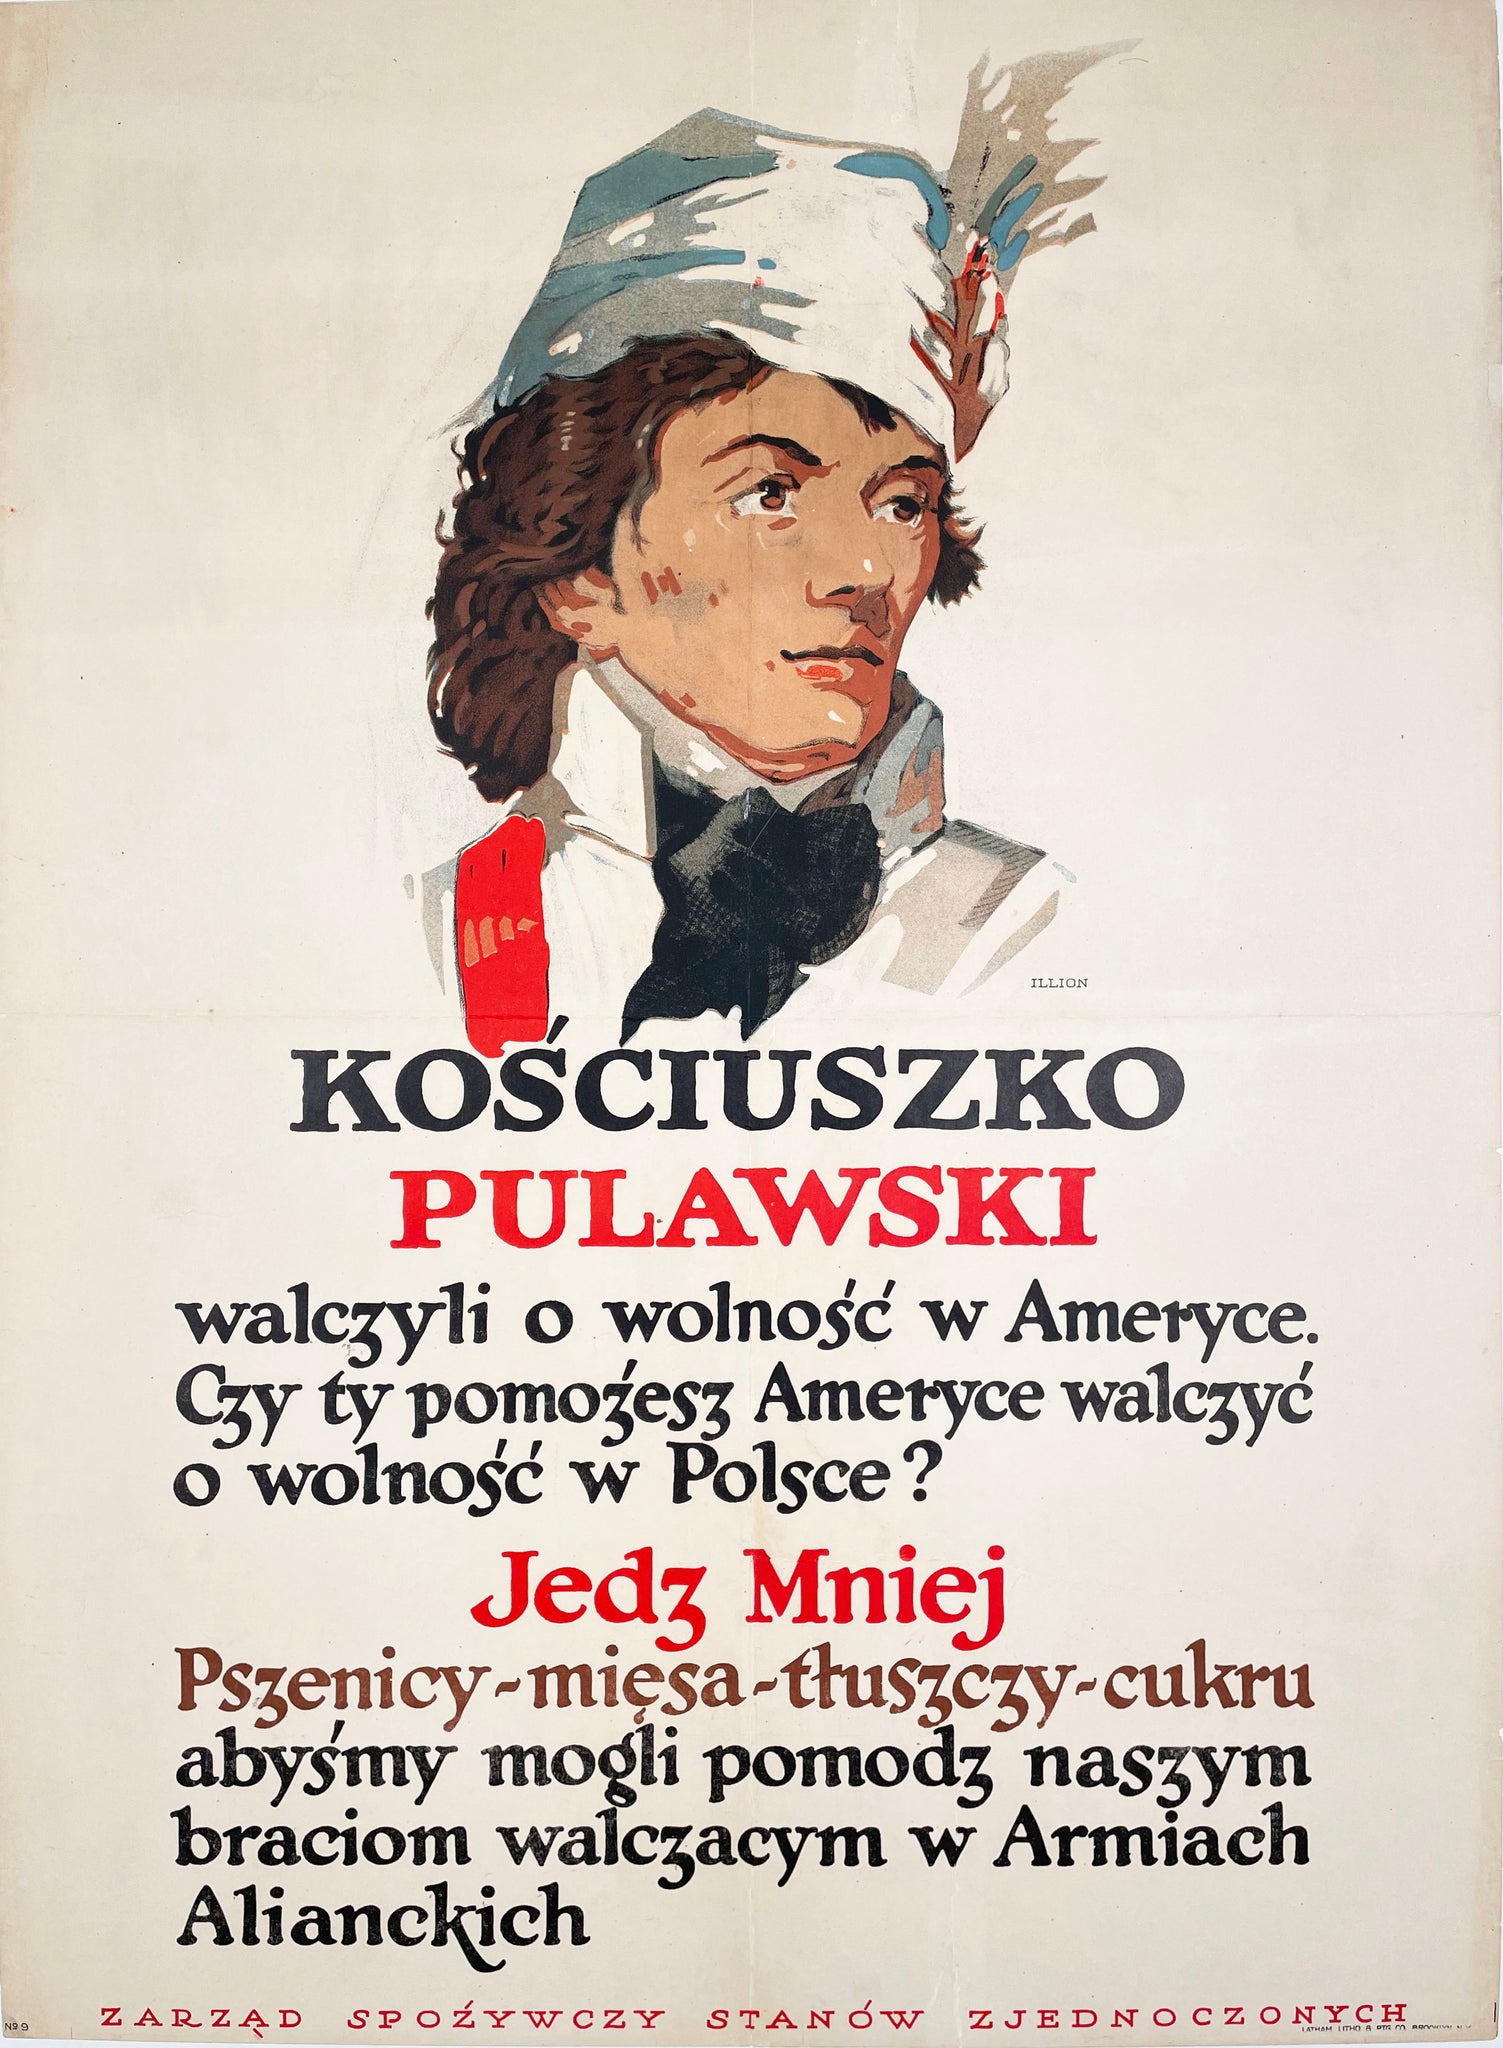 Kosciuszko Pulawski - Vintage WWI poster by Illion 1918